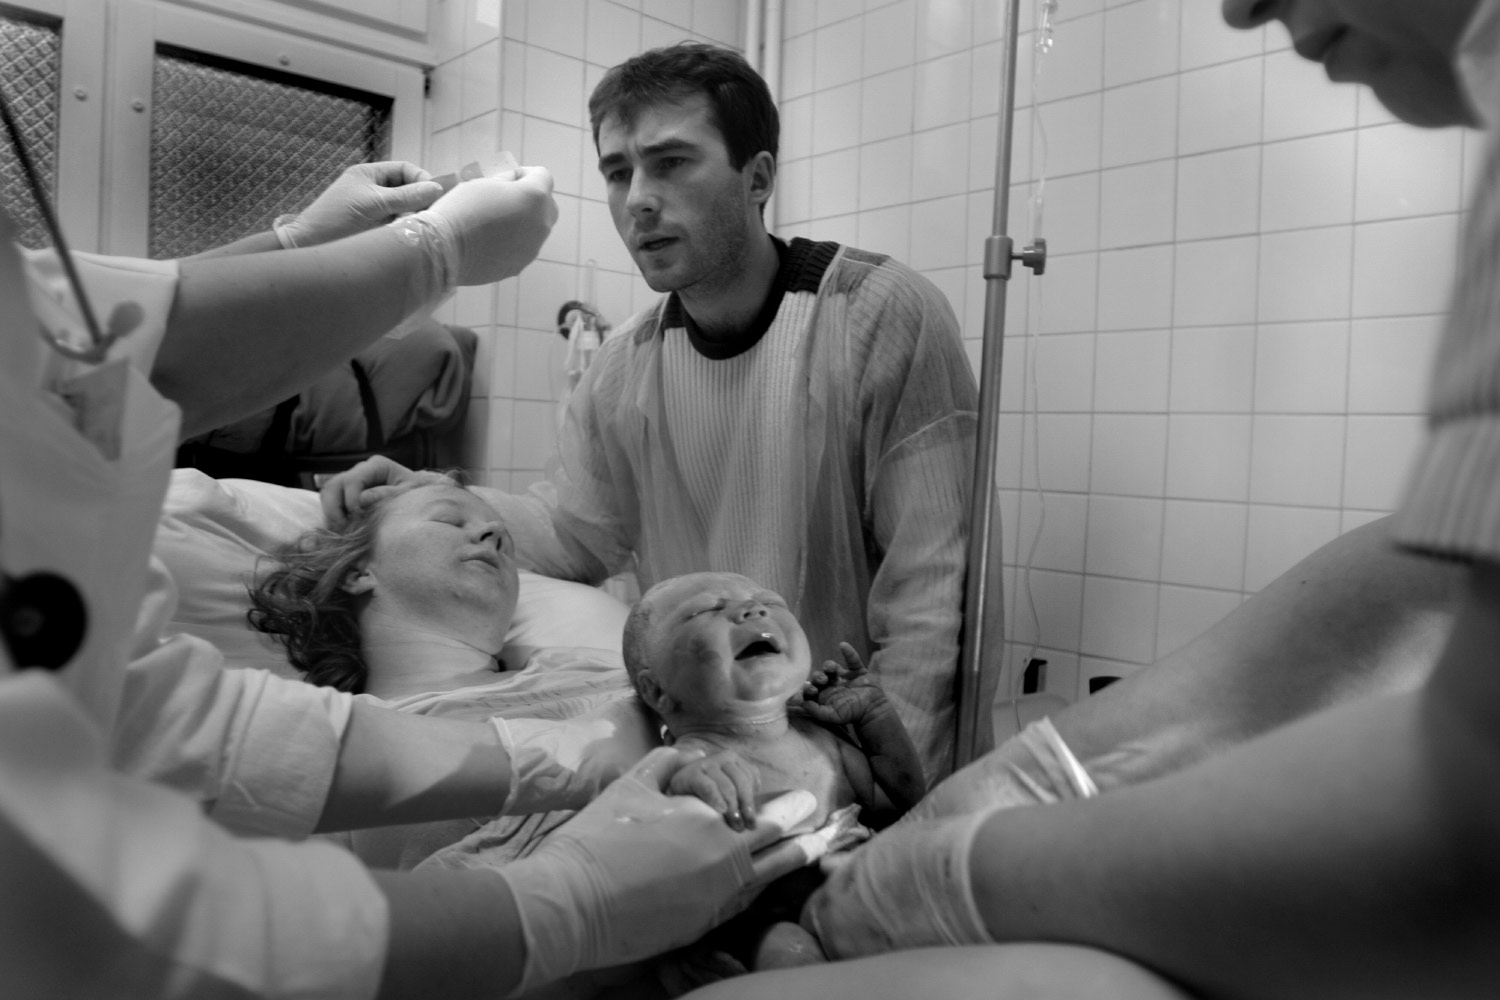 Dad in action - Documentary photographer Anna Bedyńska